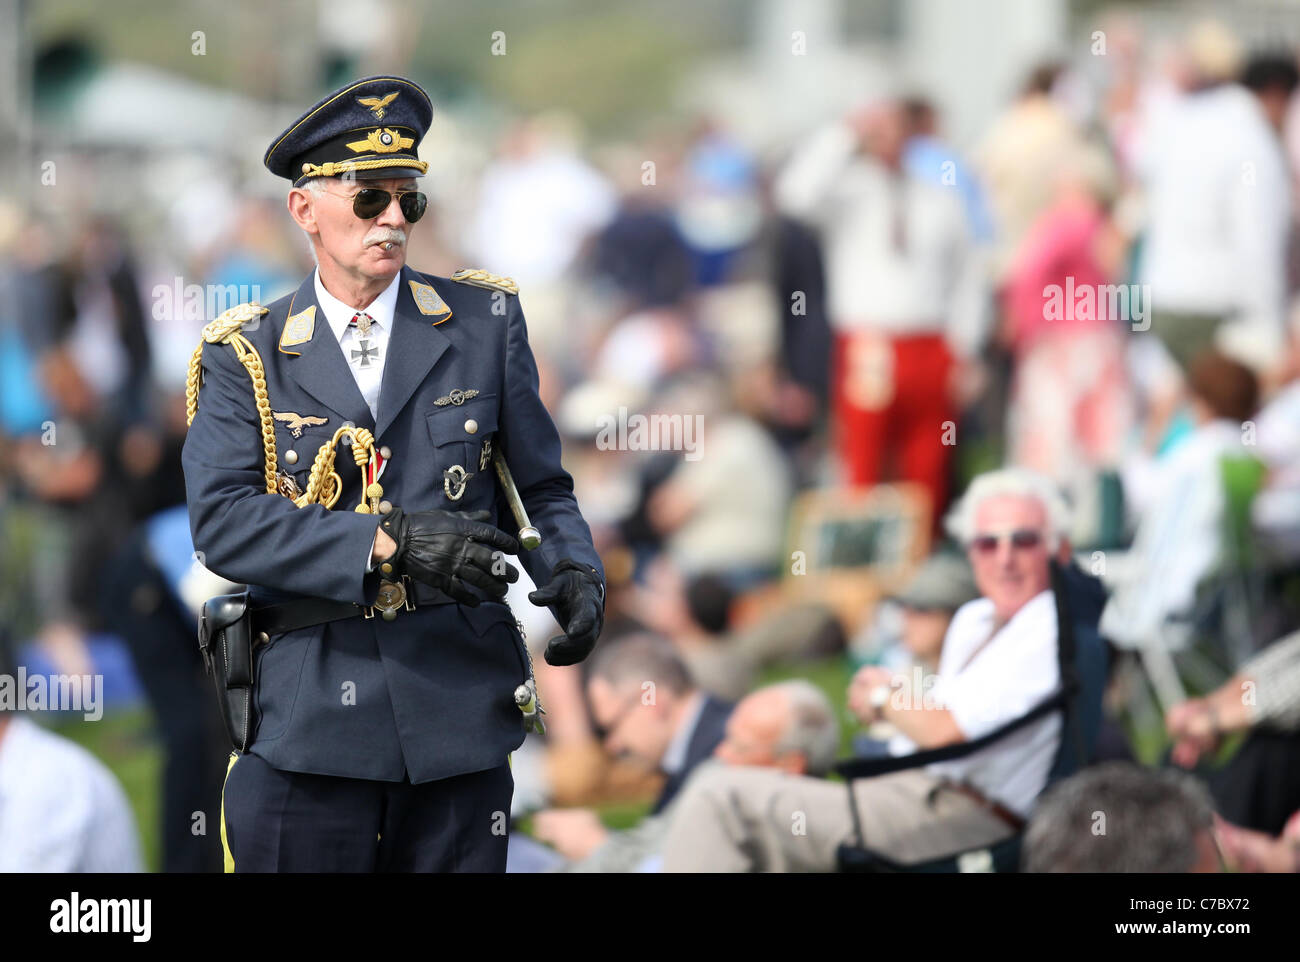 Mann gekleidet in deutsche militärische Uniform auf dem Goodwood Revival Meeting 2011. Bild von James Boardman. Stockfoto